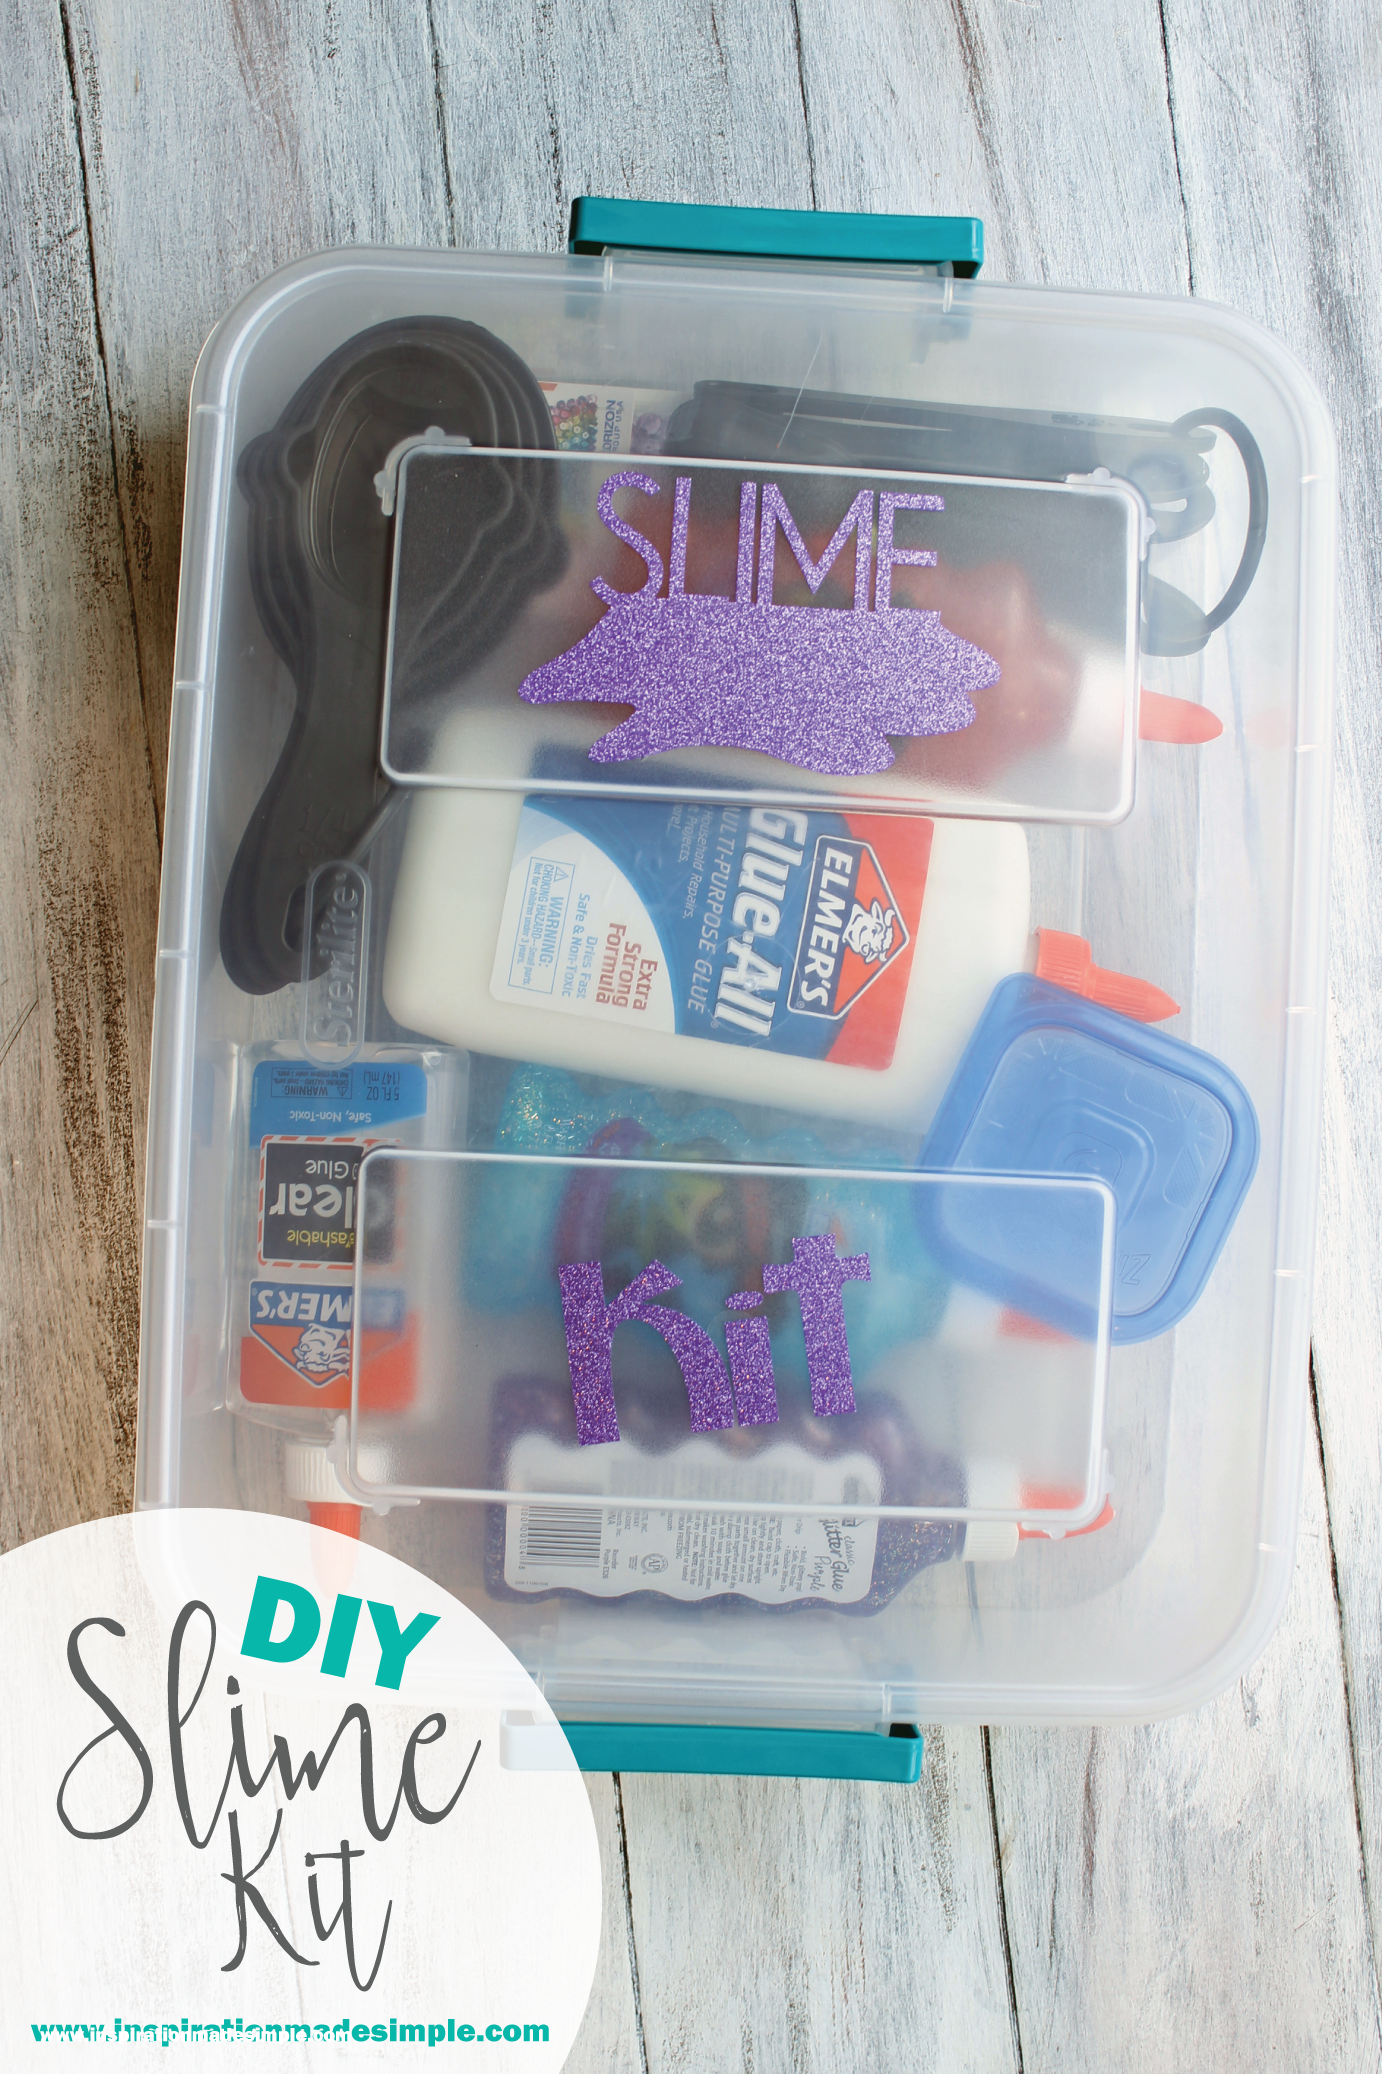 DIY Slime Kit Gift Idea for Kids